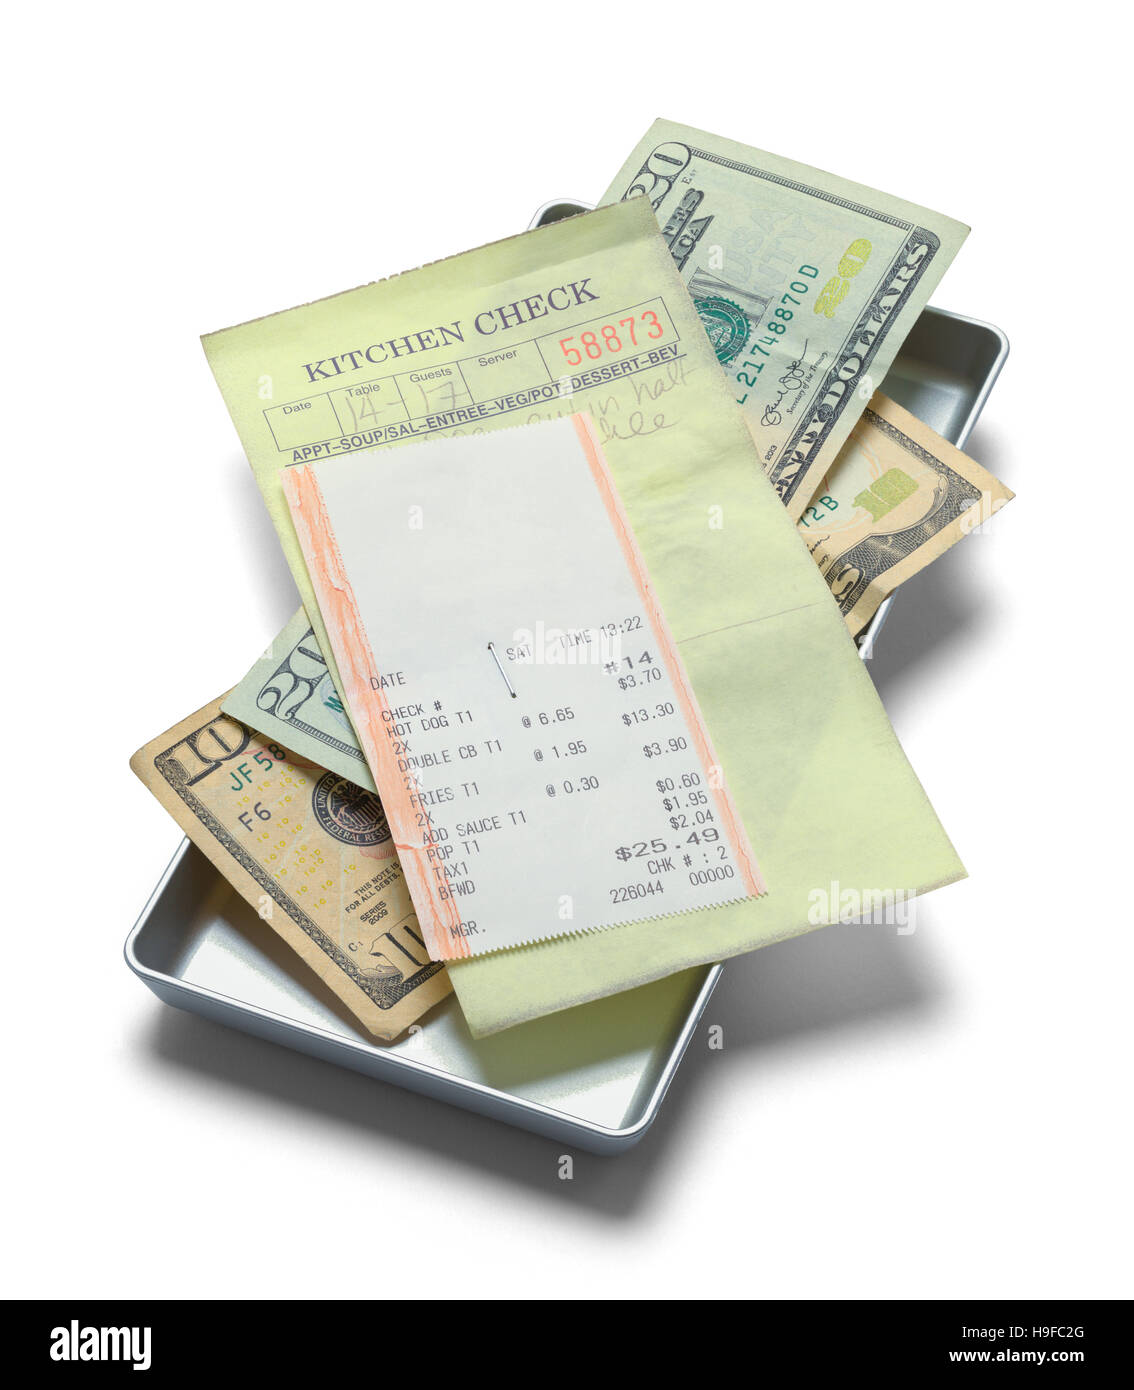 Bandeja de recepción con cheque y dinero aislado sobre fondo blanco. Foto de stock